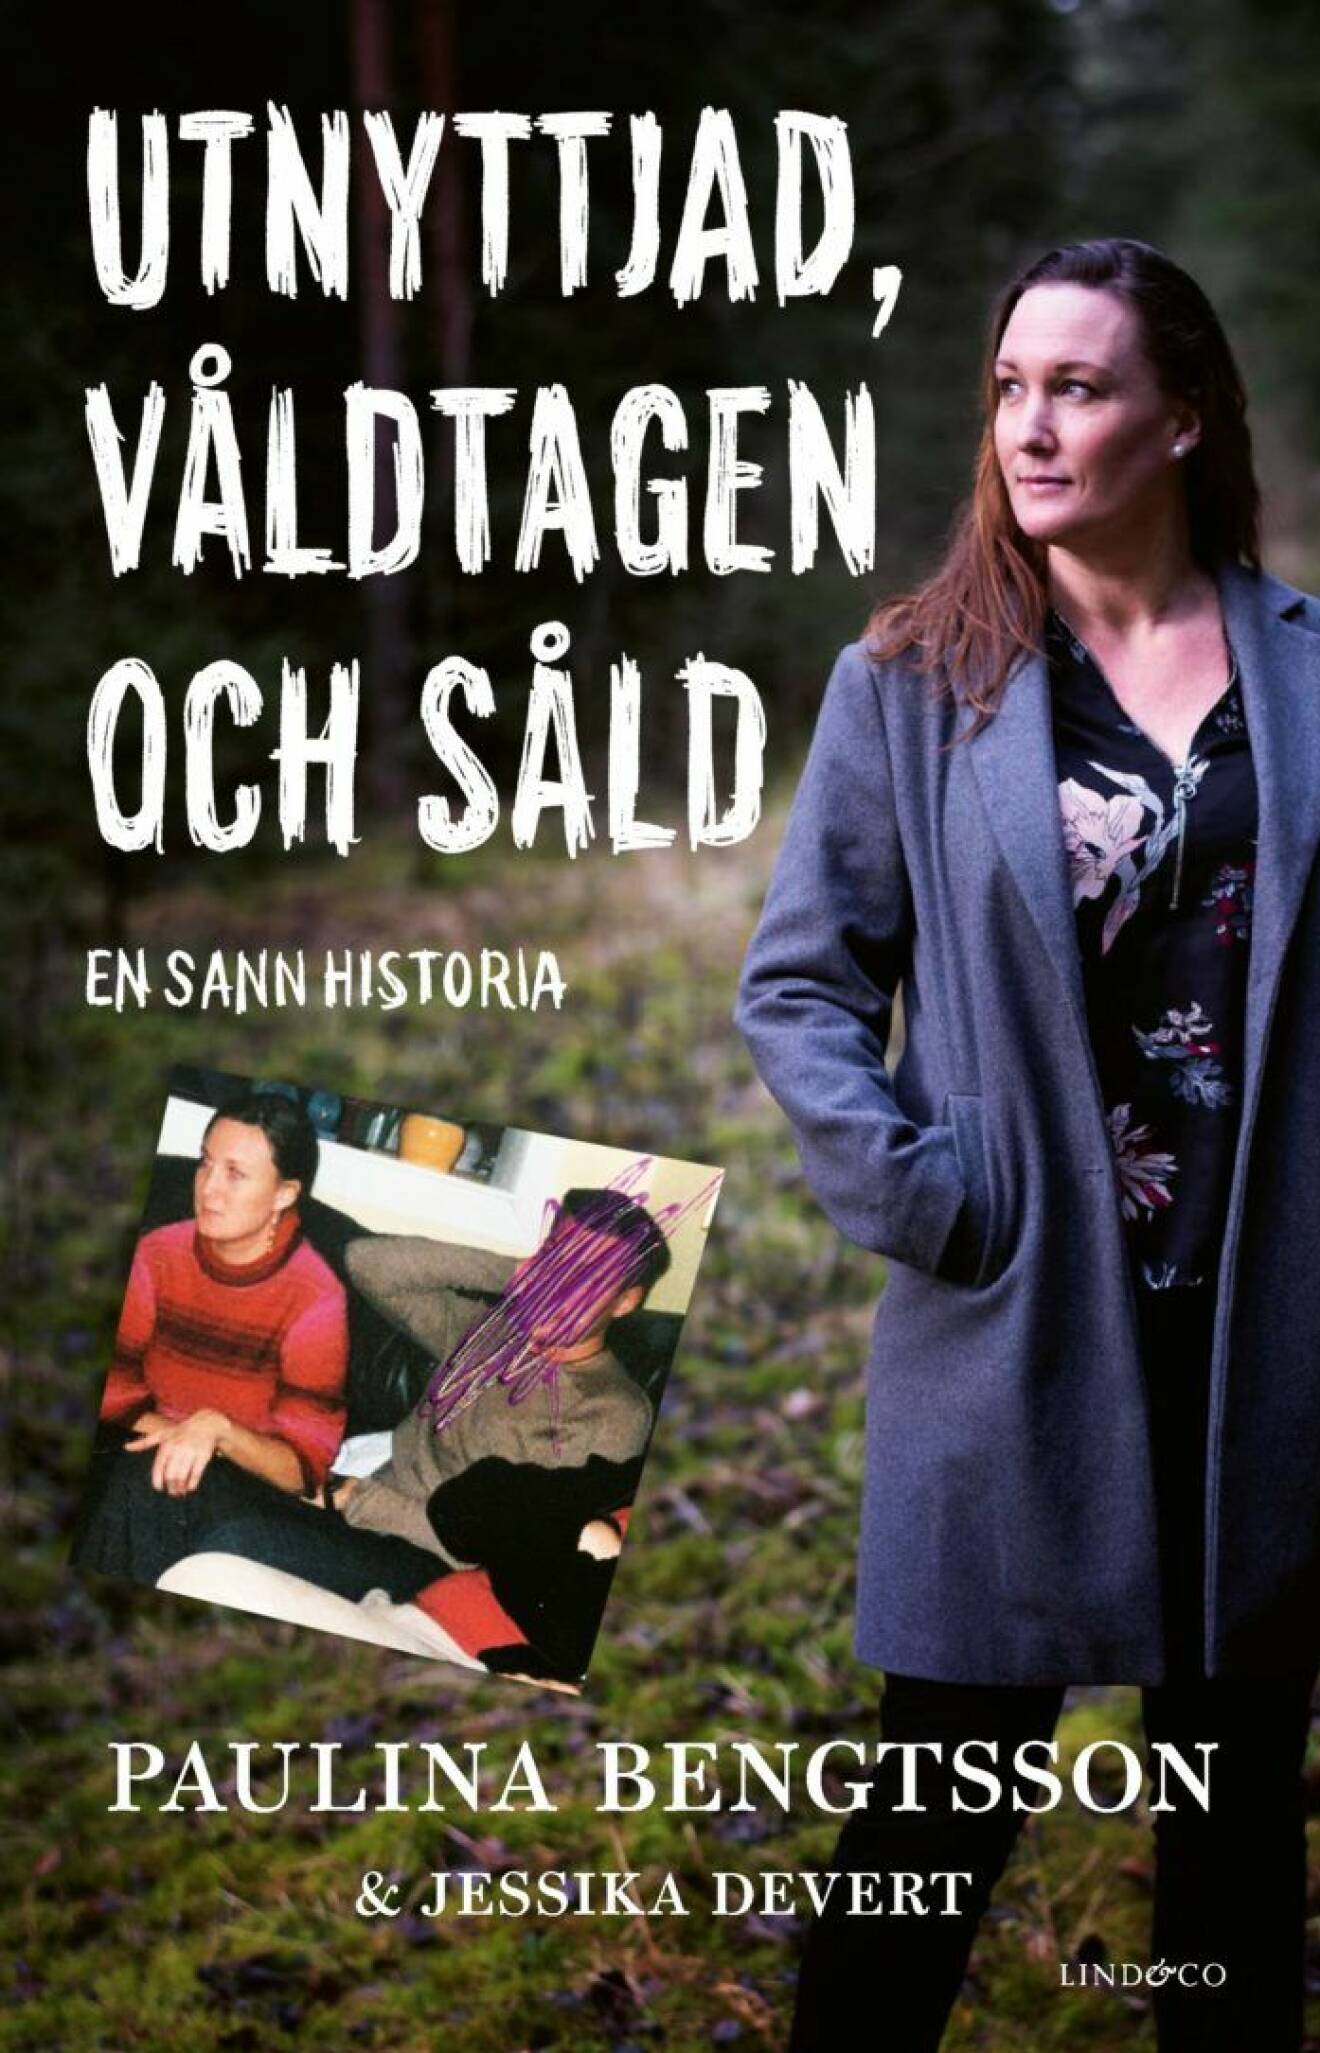 På omslaget till boken "utnyttjad, våldtagen och såld– en sann historia" står Paulina ensam i skogen. Ett gammalt fotografi visare henne sittandes bredvid sin förövare. Hans ansikte har blivit överstruket.